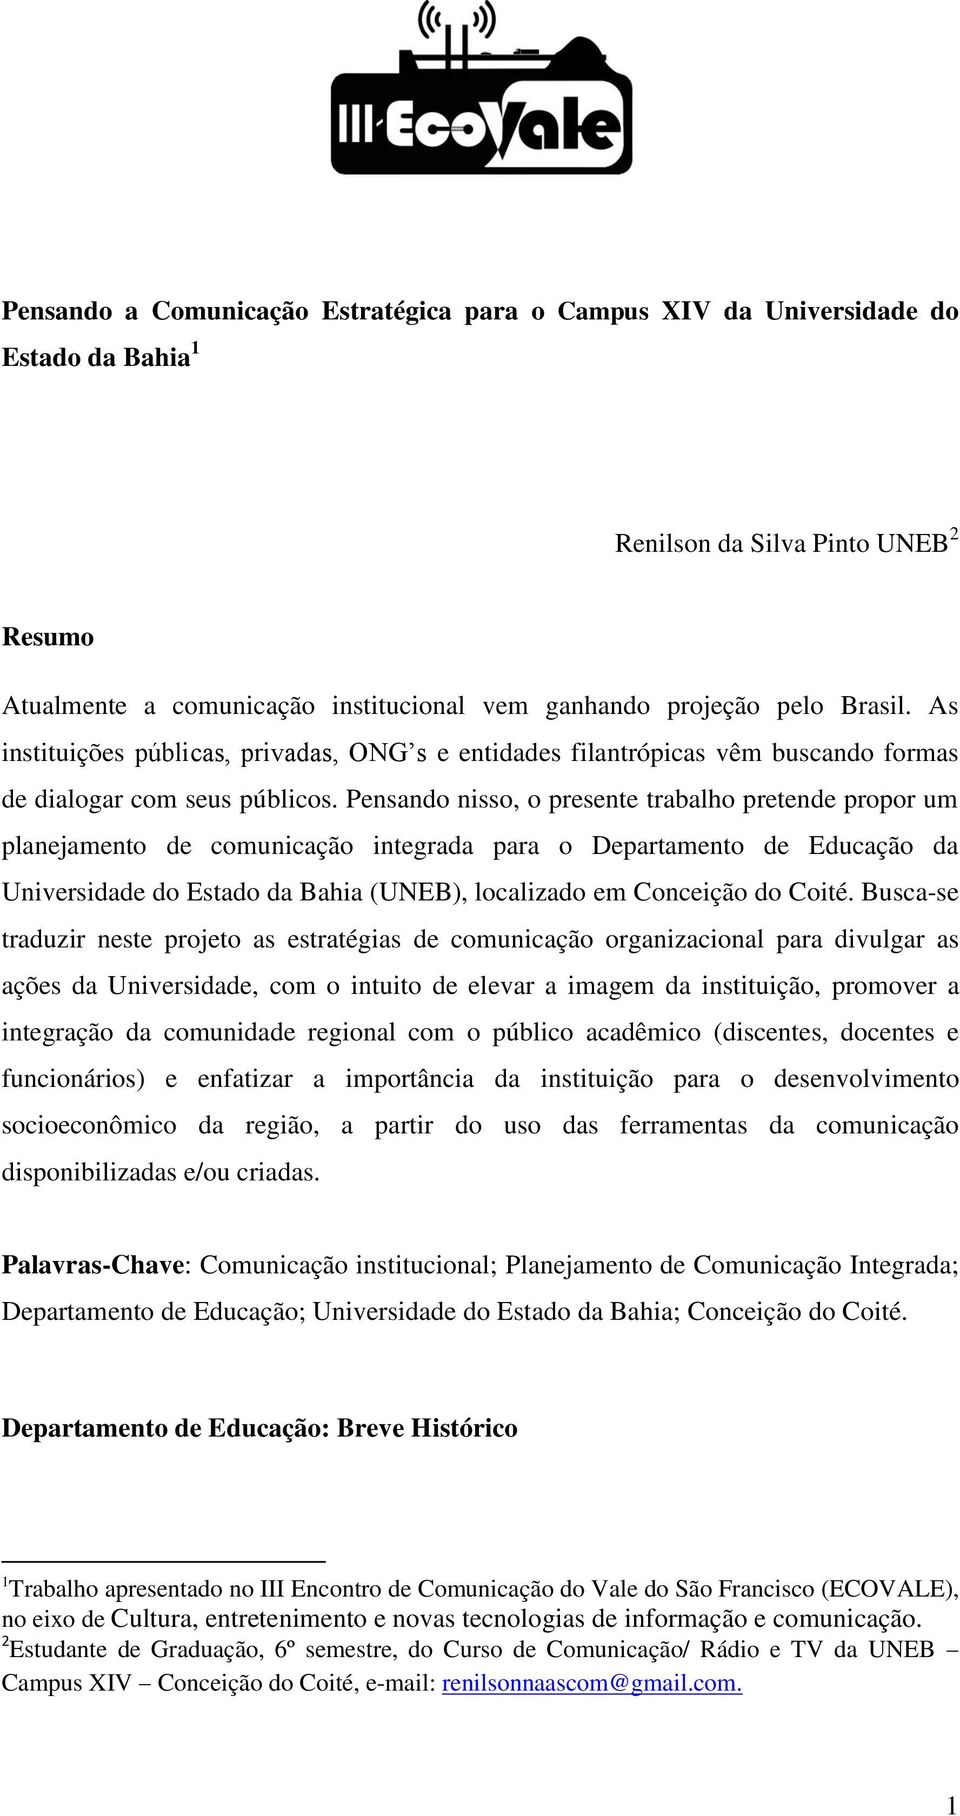 Pensando nisso, o presente trabalho pretende propor um planejamento de comunicação integrada para o Departamento de Educação da Universidade do Estado da Bahia (UNEB), localizado em Conceição do